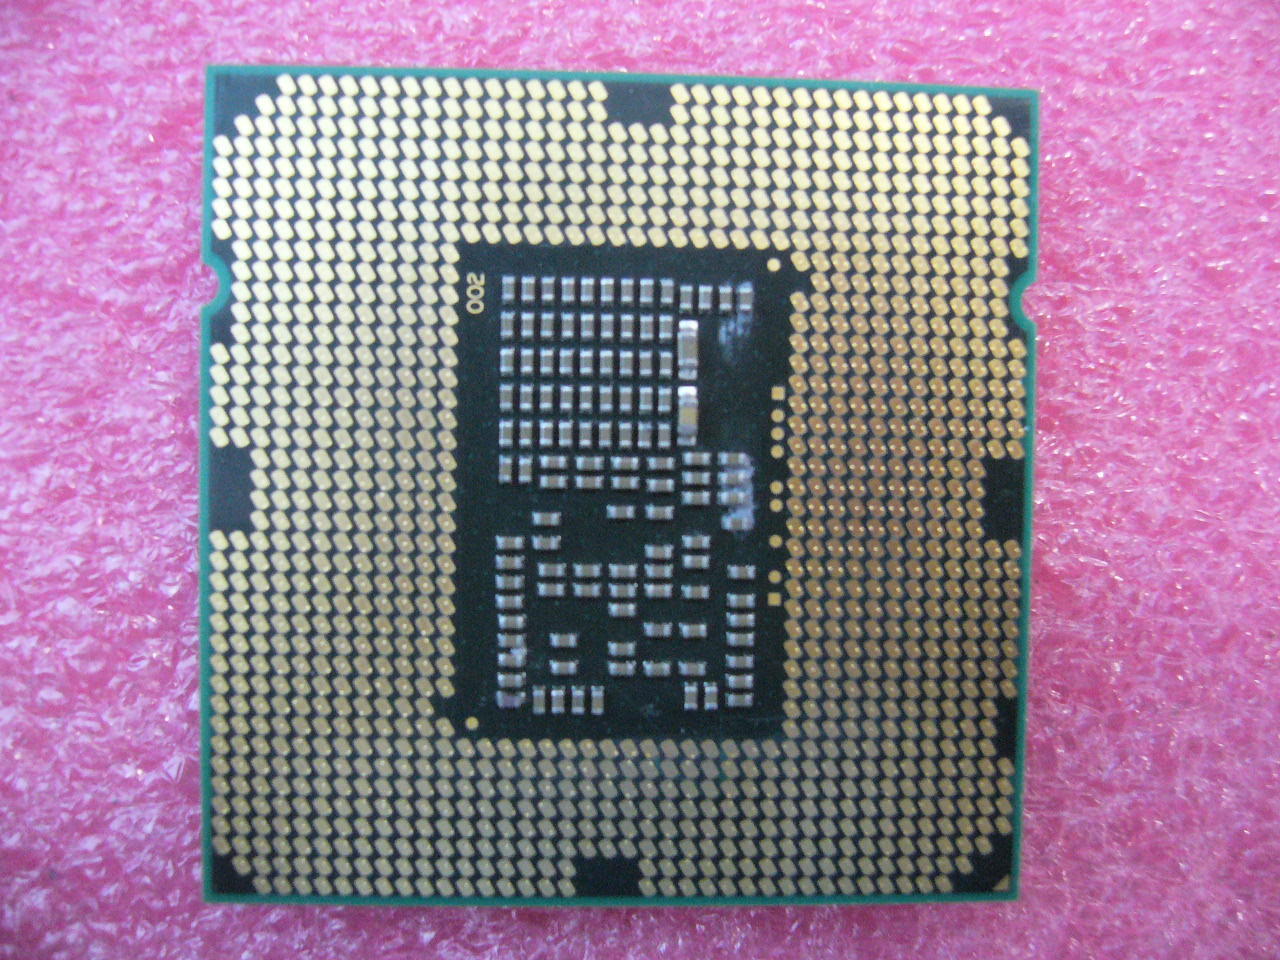 QTY 1x INTEL i3-560 Dual Core CPU 3.33GHZ/4MB LGA1156 SLBY2 - zum Schließen ins Bild klicken